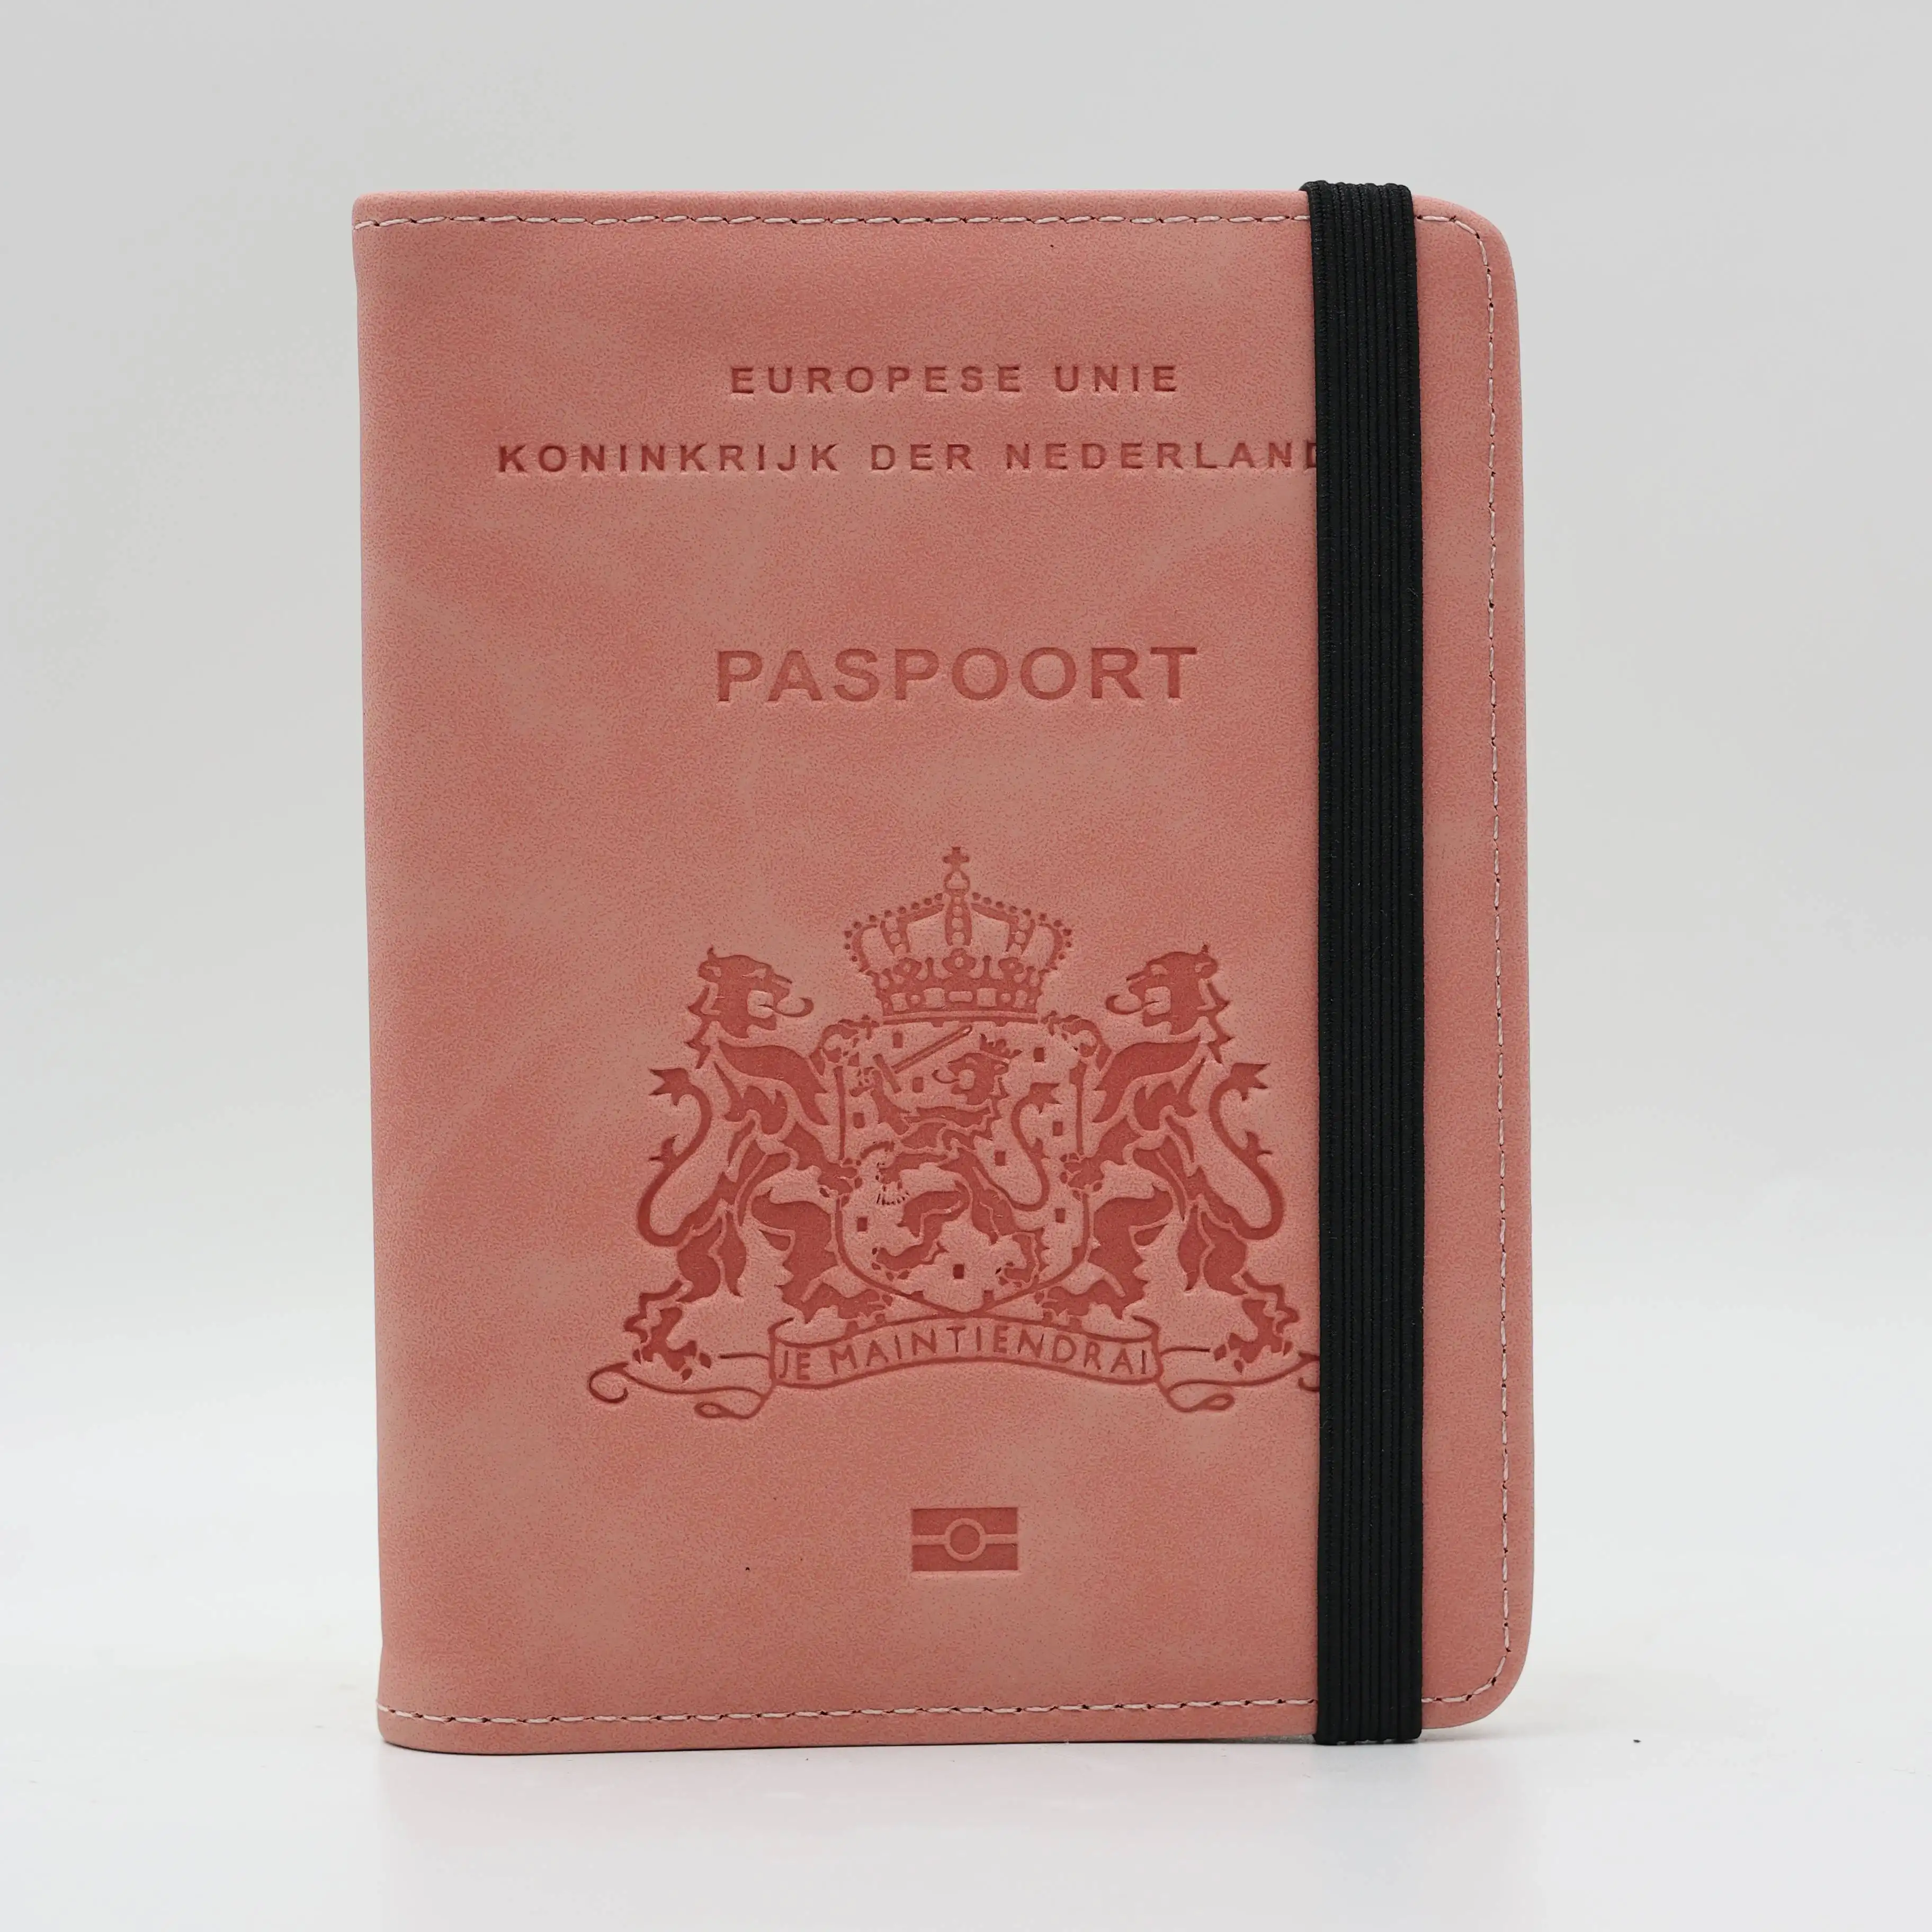 โลโก้สหราชอาณาจักรผู้ถือหนังสือเดินทางเนเธอร์แลนด์หนังขายส่งกระเป๋าสตางค์เดินทาง PU ปรับแต่งตัวป้องกันหนังสือเดินทางมัลติฟังก์ชั่นยุโรปที่เรียบง่าย